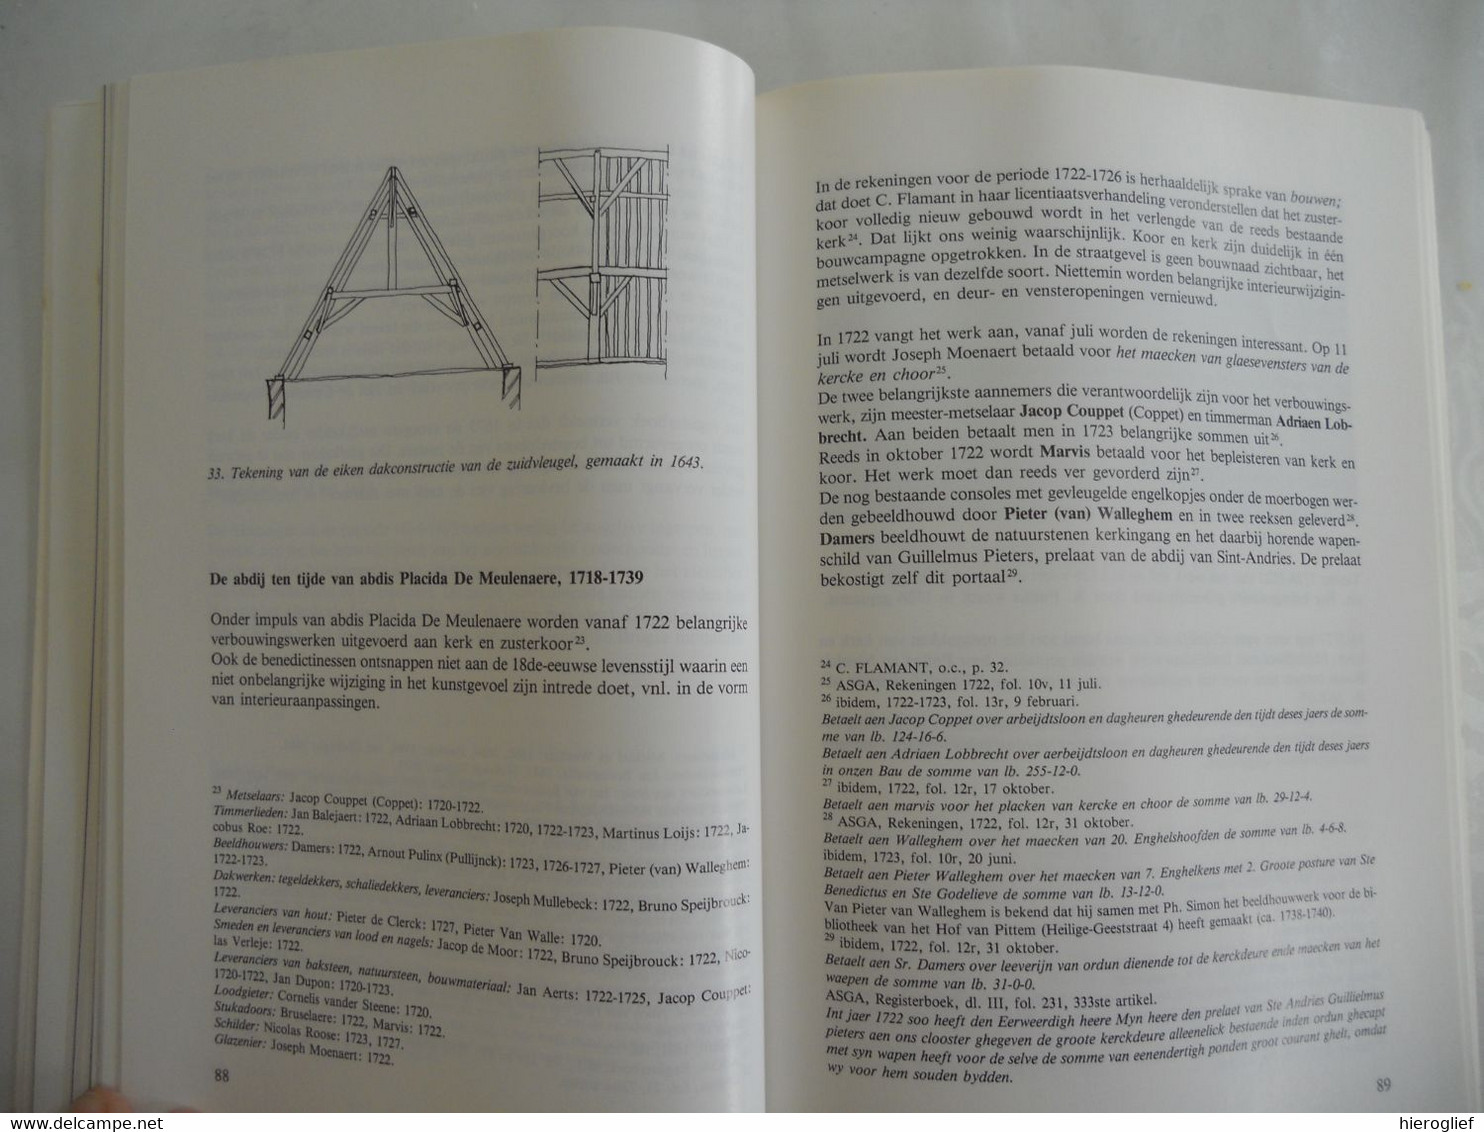 DE SINT-GODELIEVE ABDIJ te BRUGGE 1984 / leven drogo architectuur collecties verering pulinx keuken tin gistel